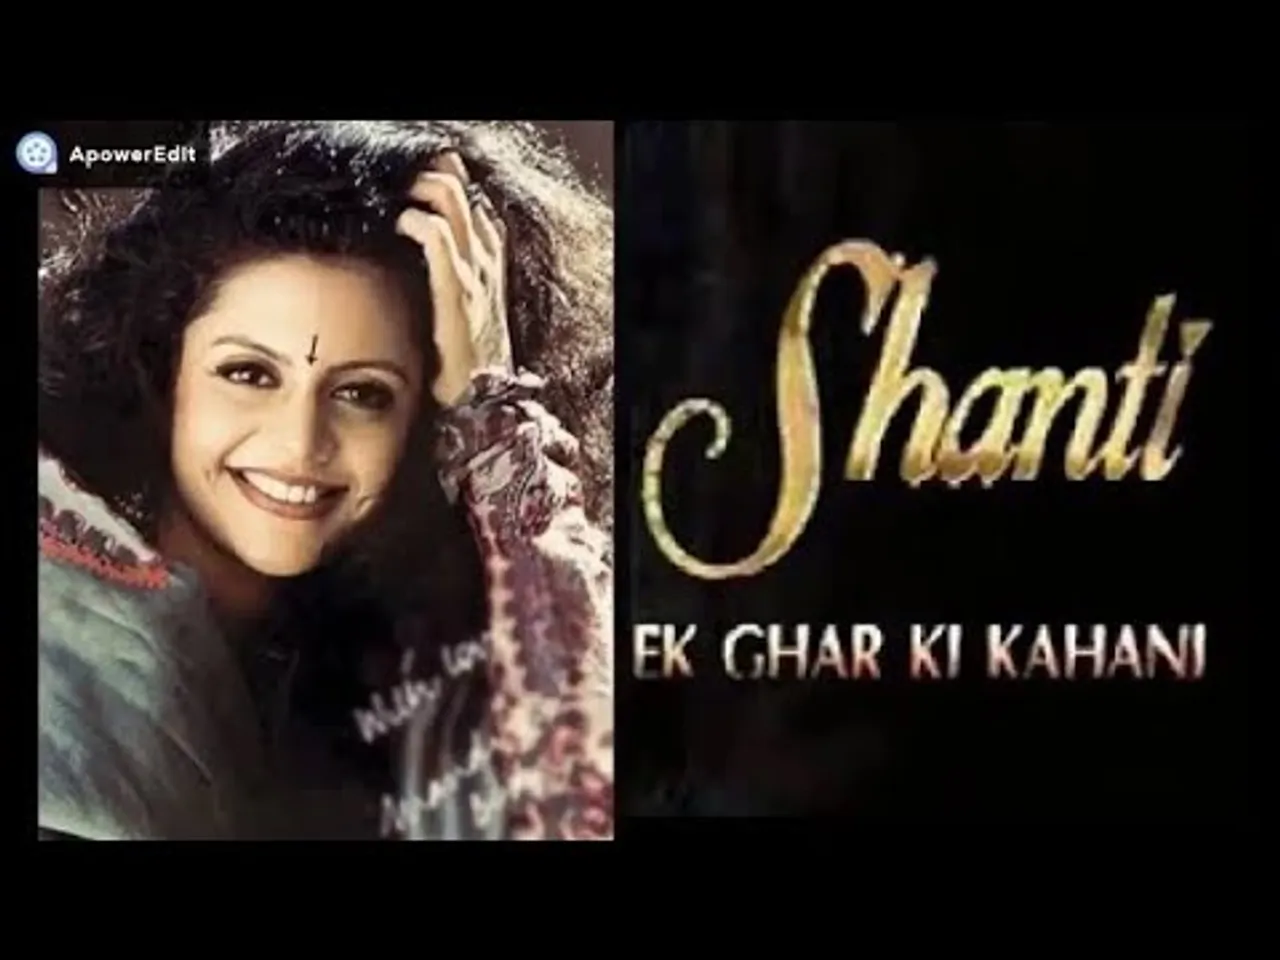 Shanti - Ek Ghar Ki Kahani Main Theme Aired On Dordarshan Network